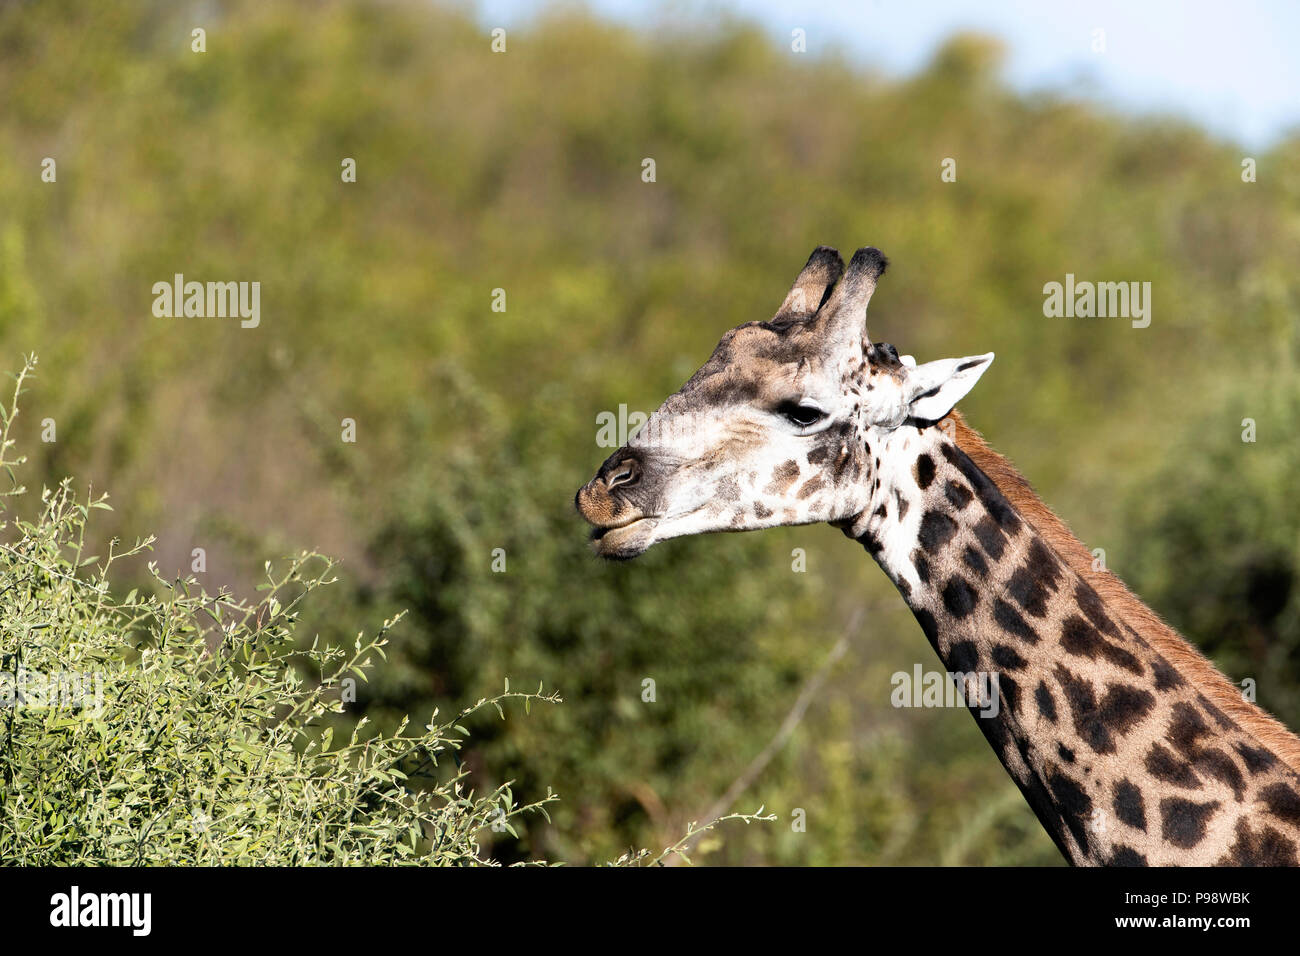 Close-up of giraffe head, Chobe NP, Botswana Stock Photo